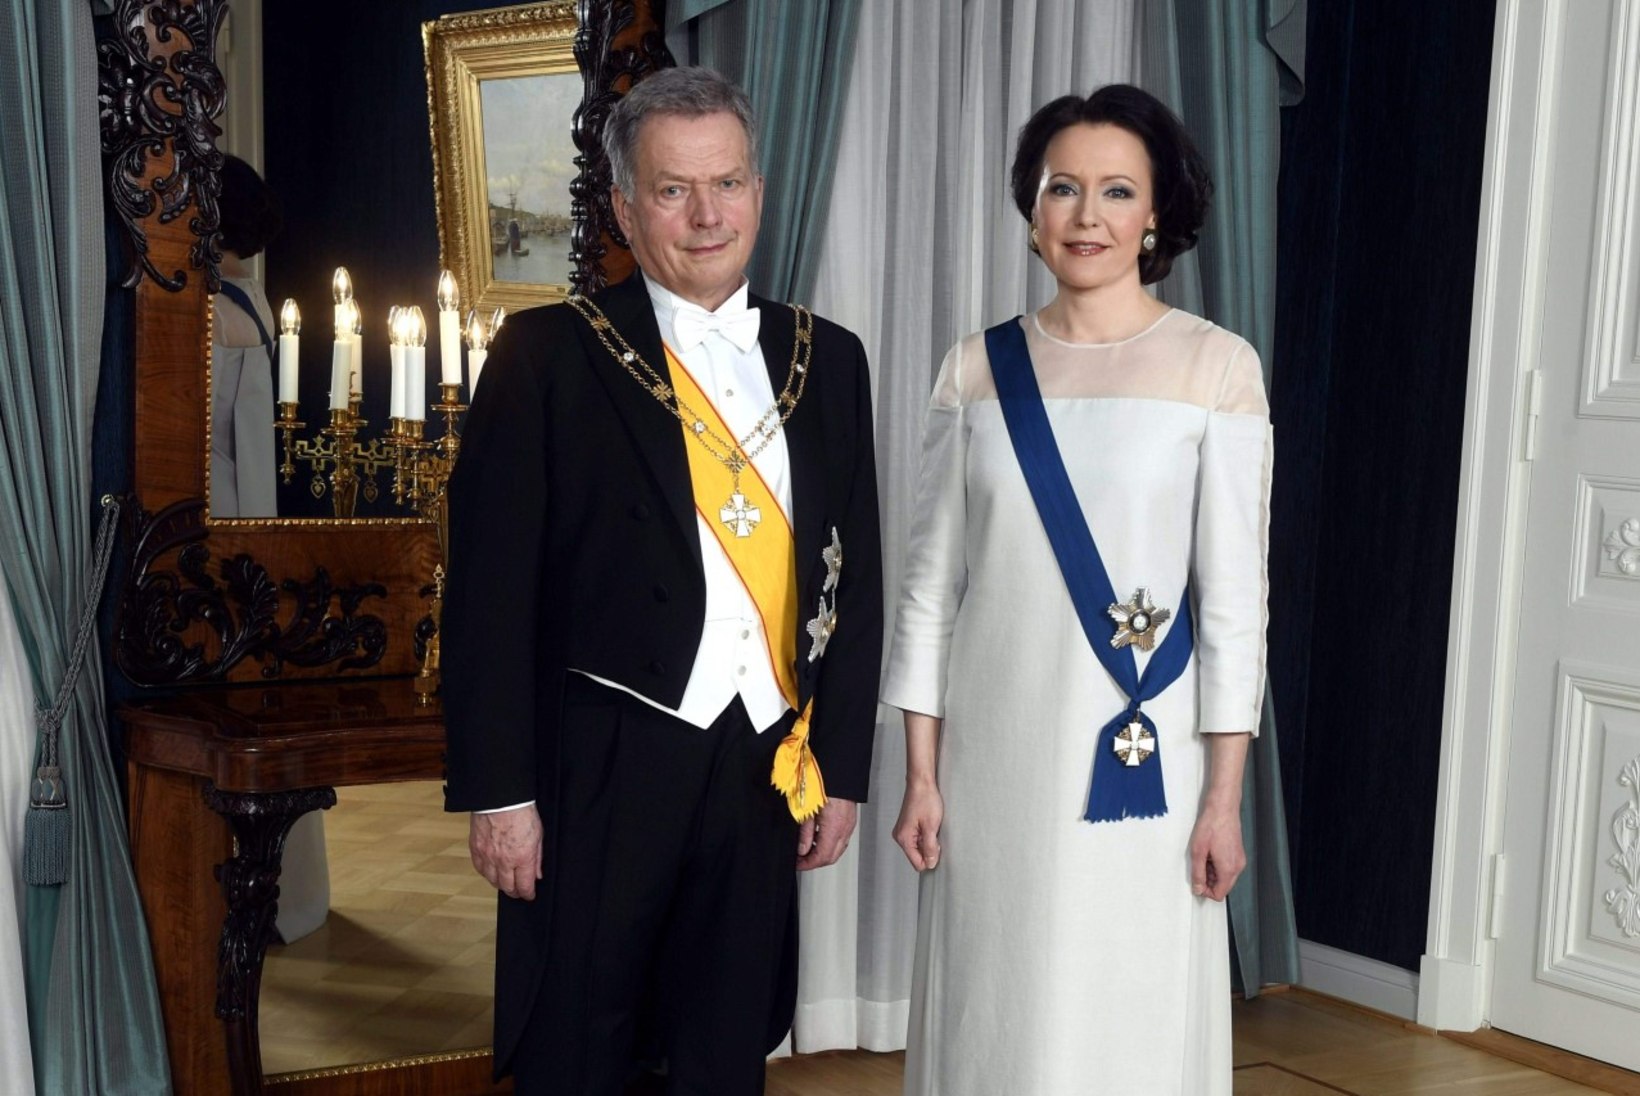 KULD, KARD JA VÄRVISÄRA: vaata Soome presidendiballi efektsemaid kleite!